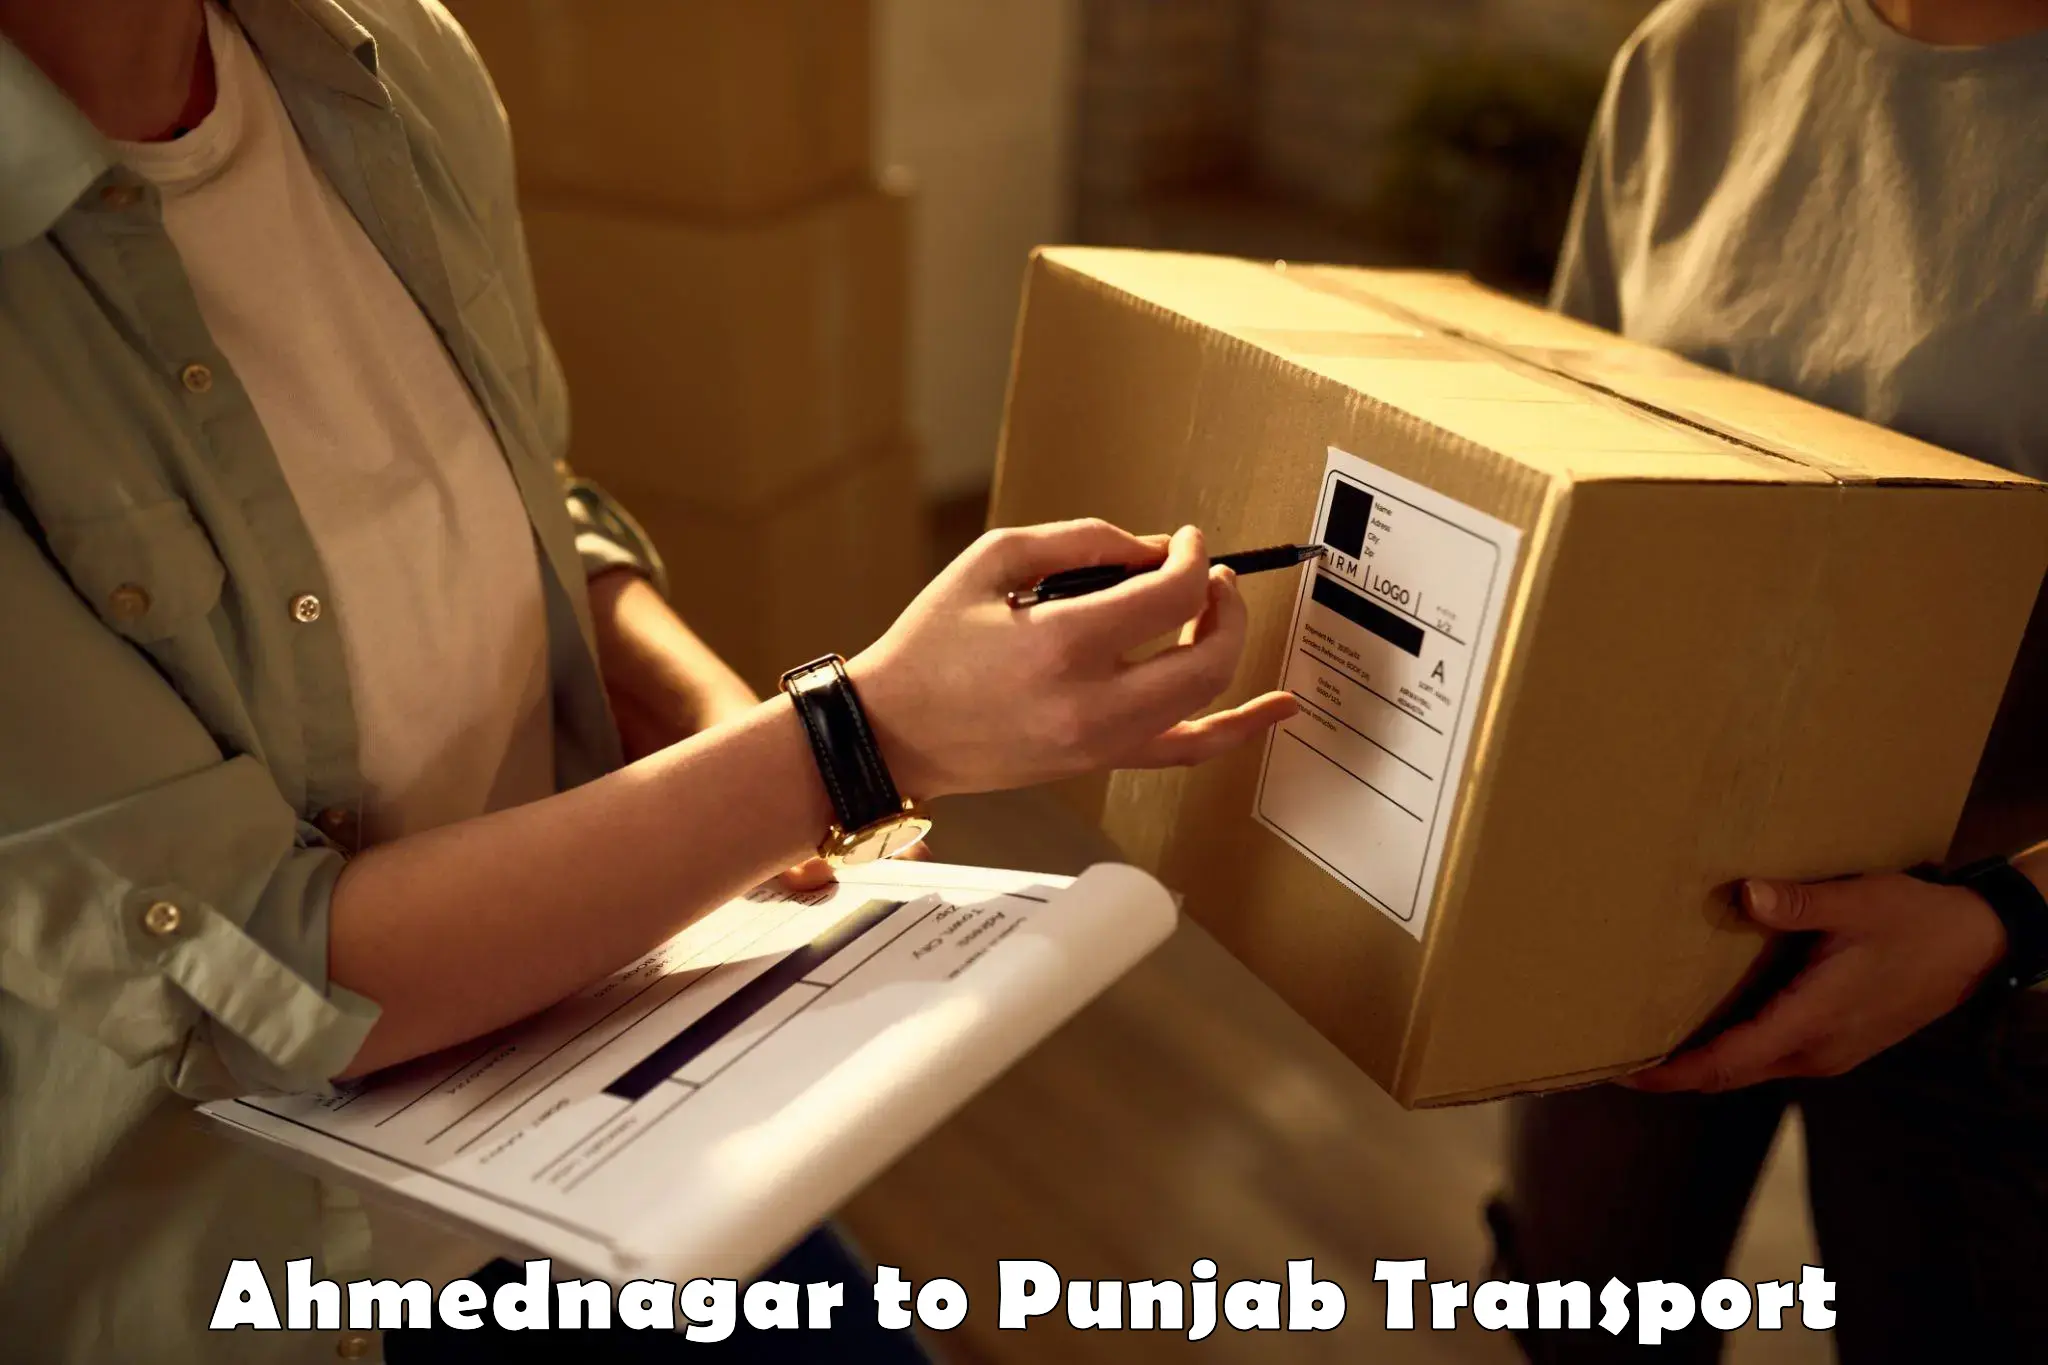 Container transport service Ahmednagar to Rupnagar